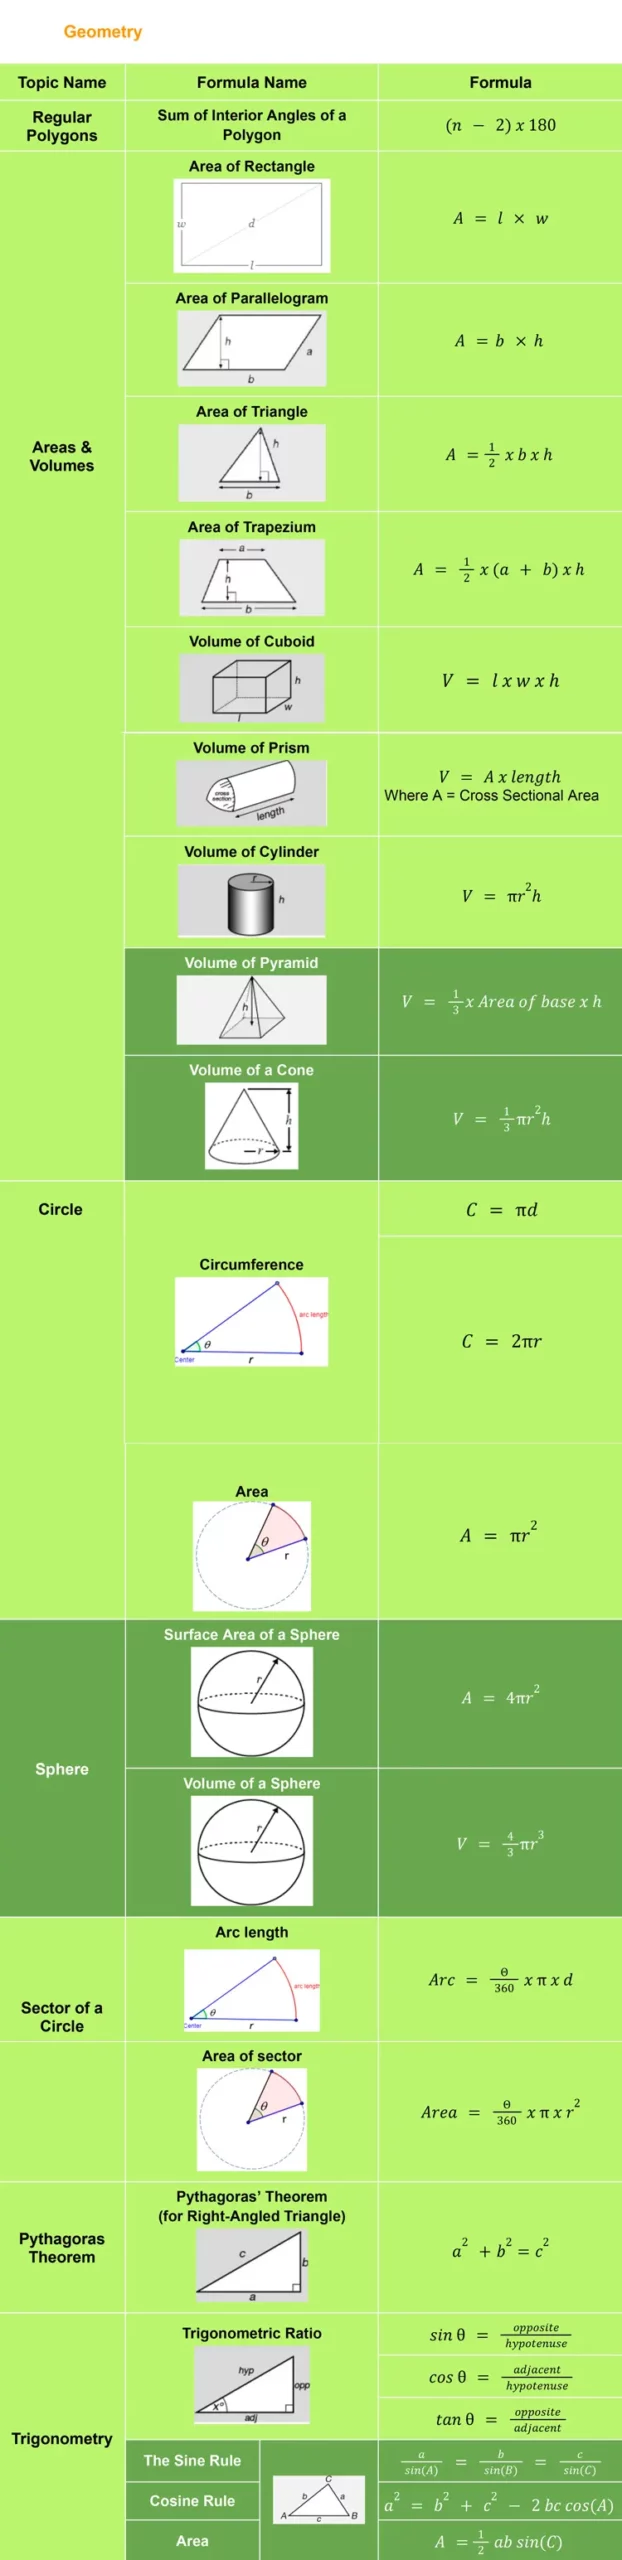 GCSE Geometry formula